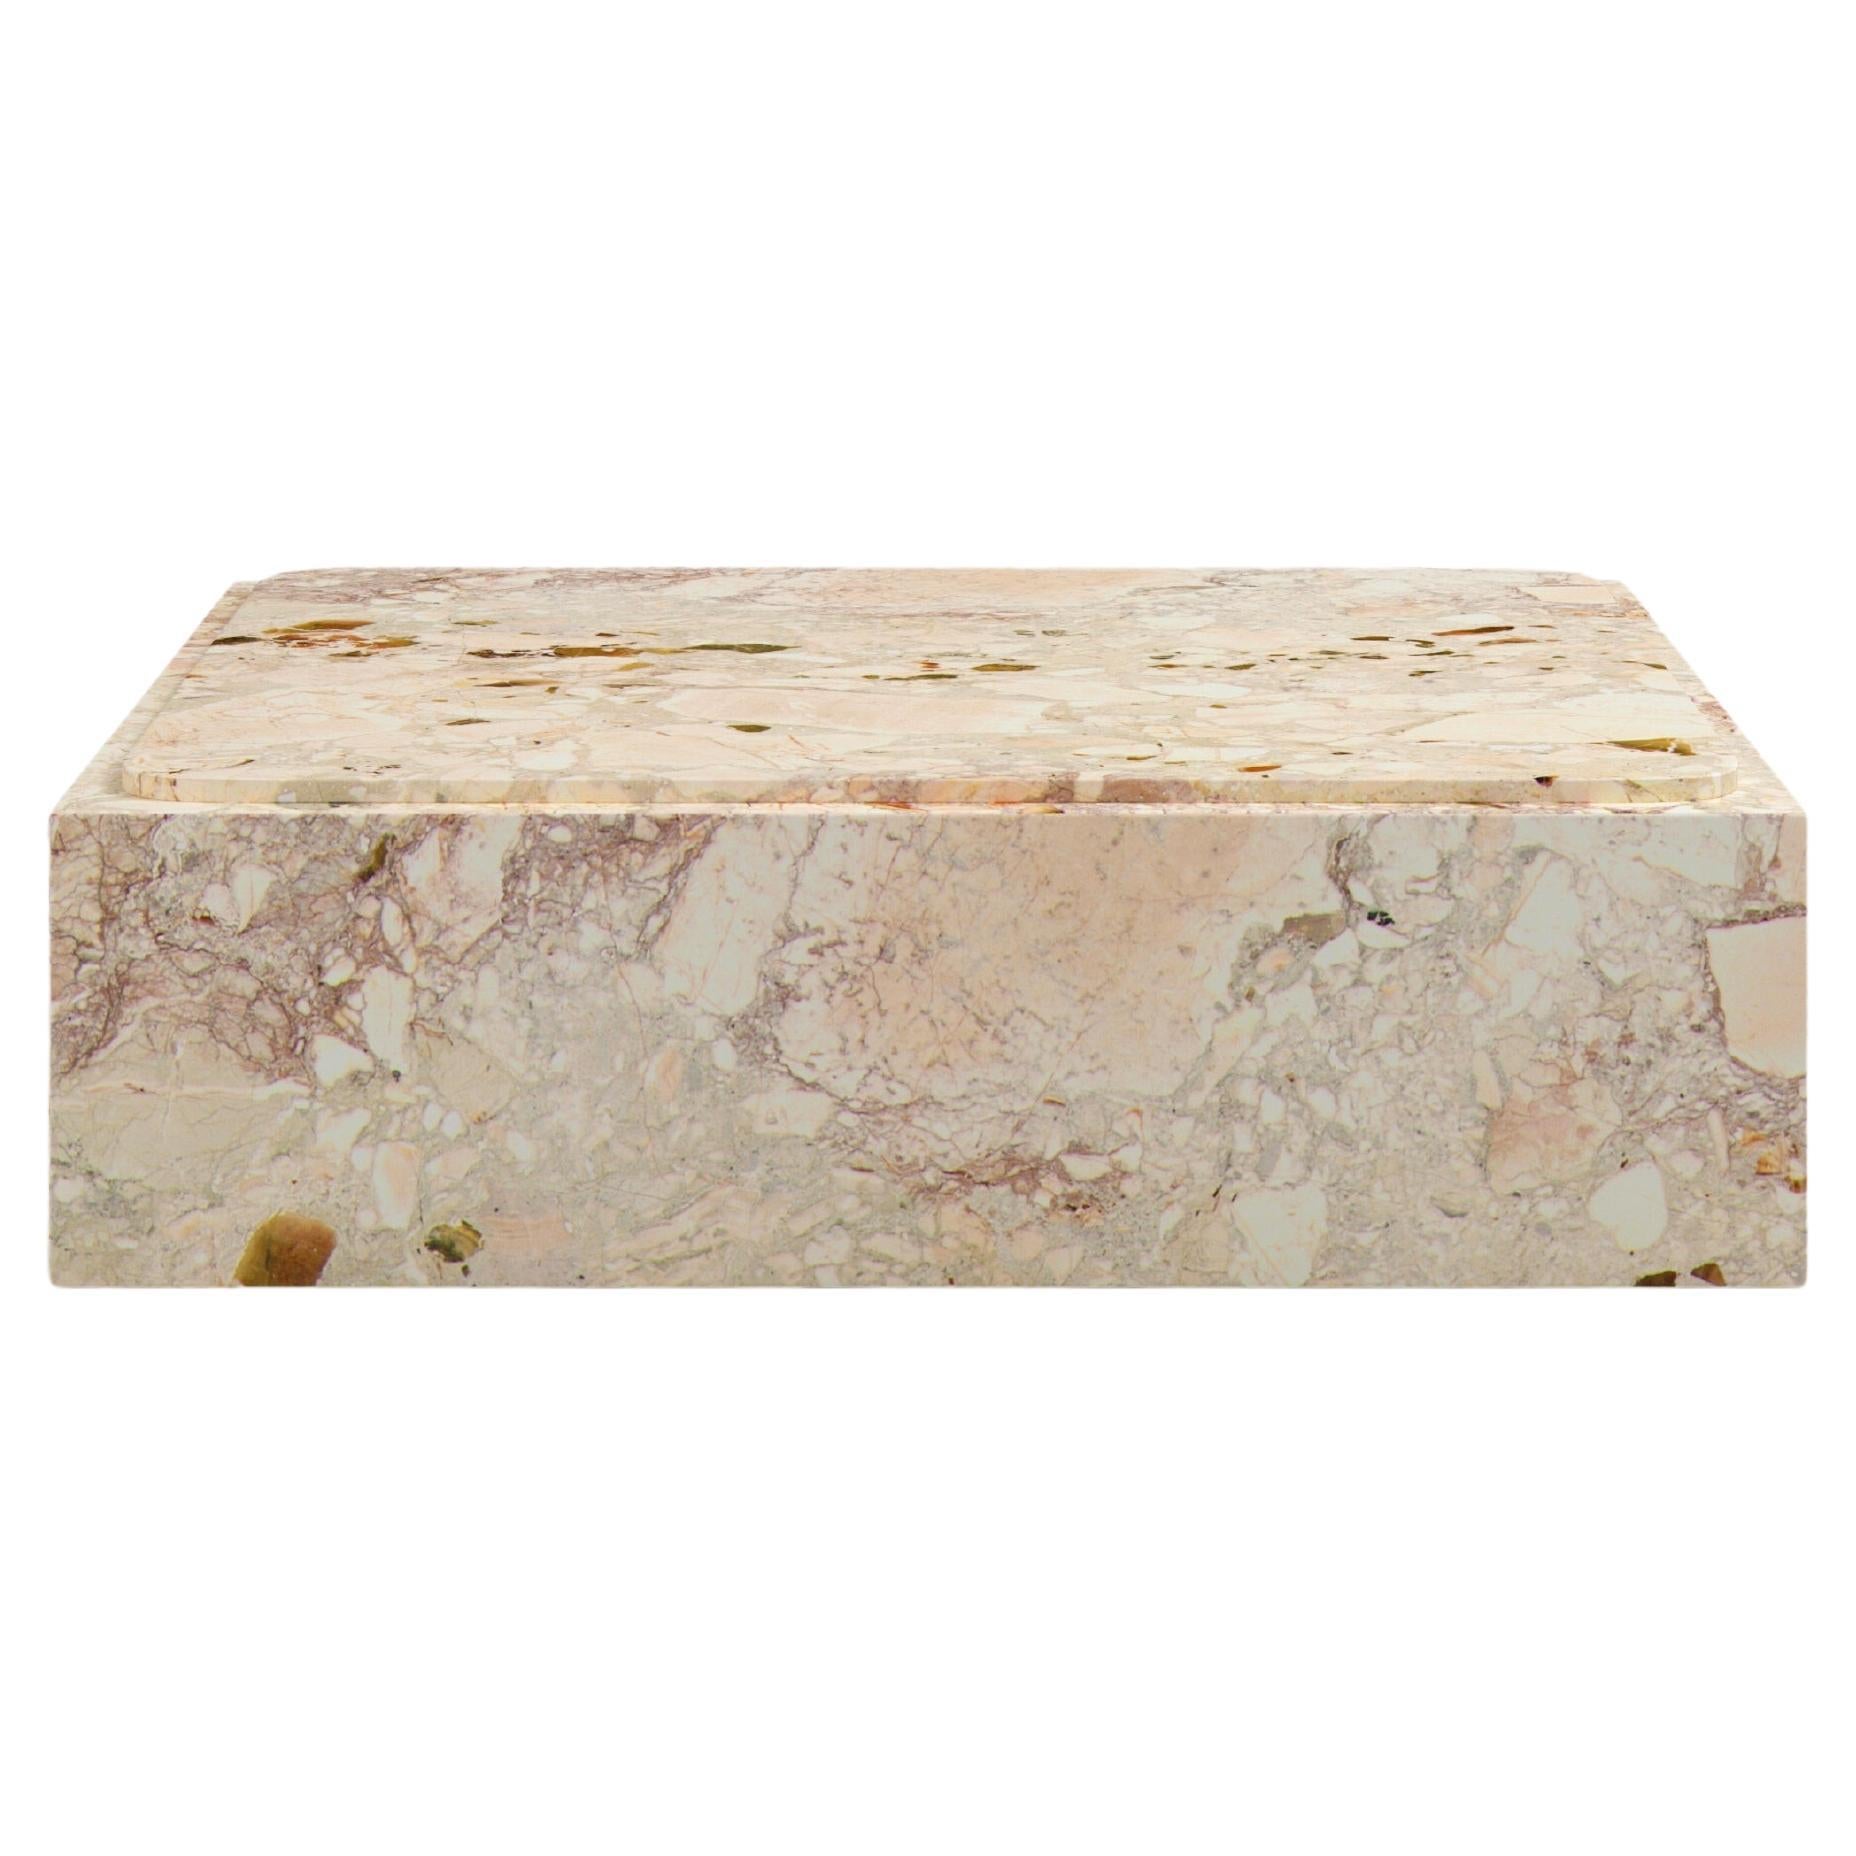 FORM(LA) Cubo Square Plinth Coffee Table 48”L x 48"W x 13”H Breccia Rosa Marble For Sale